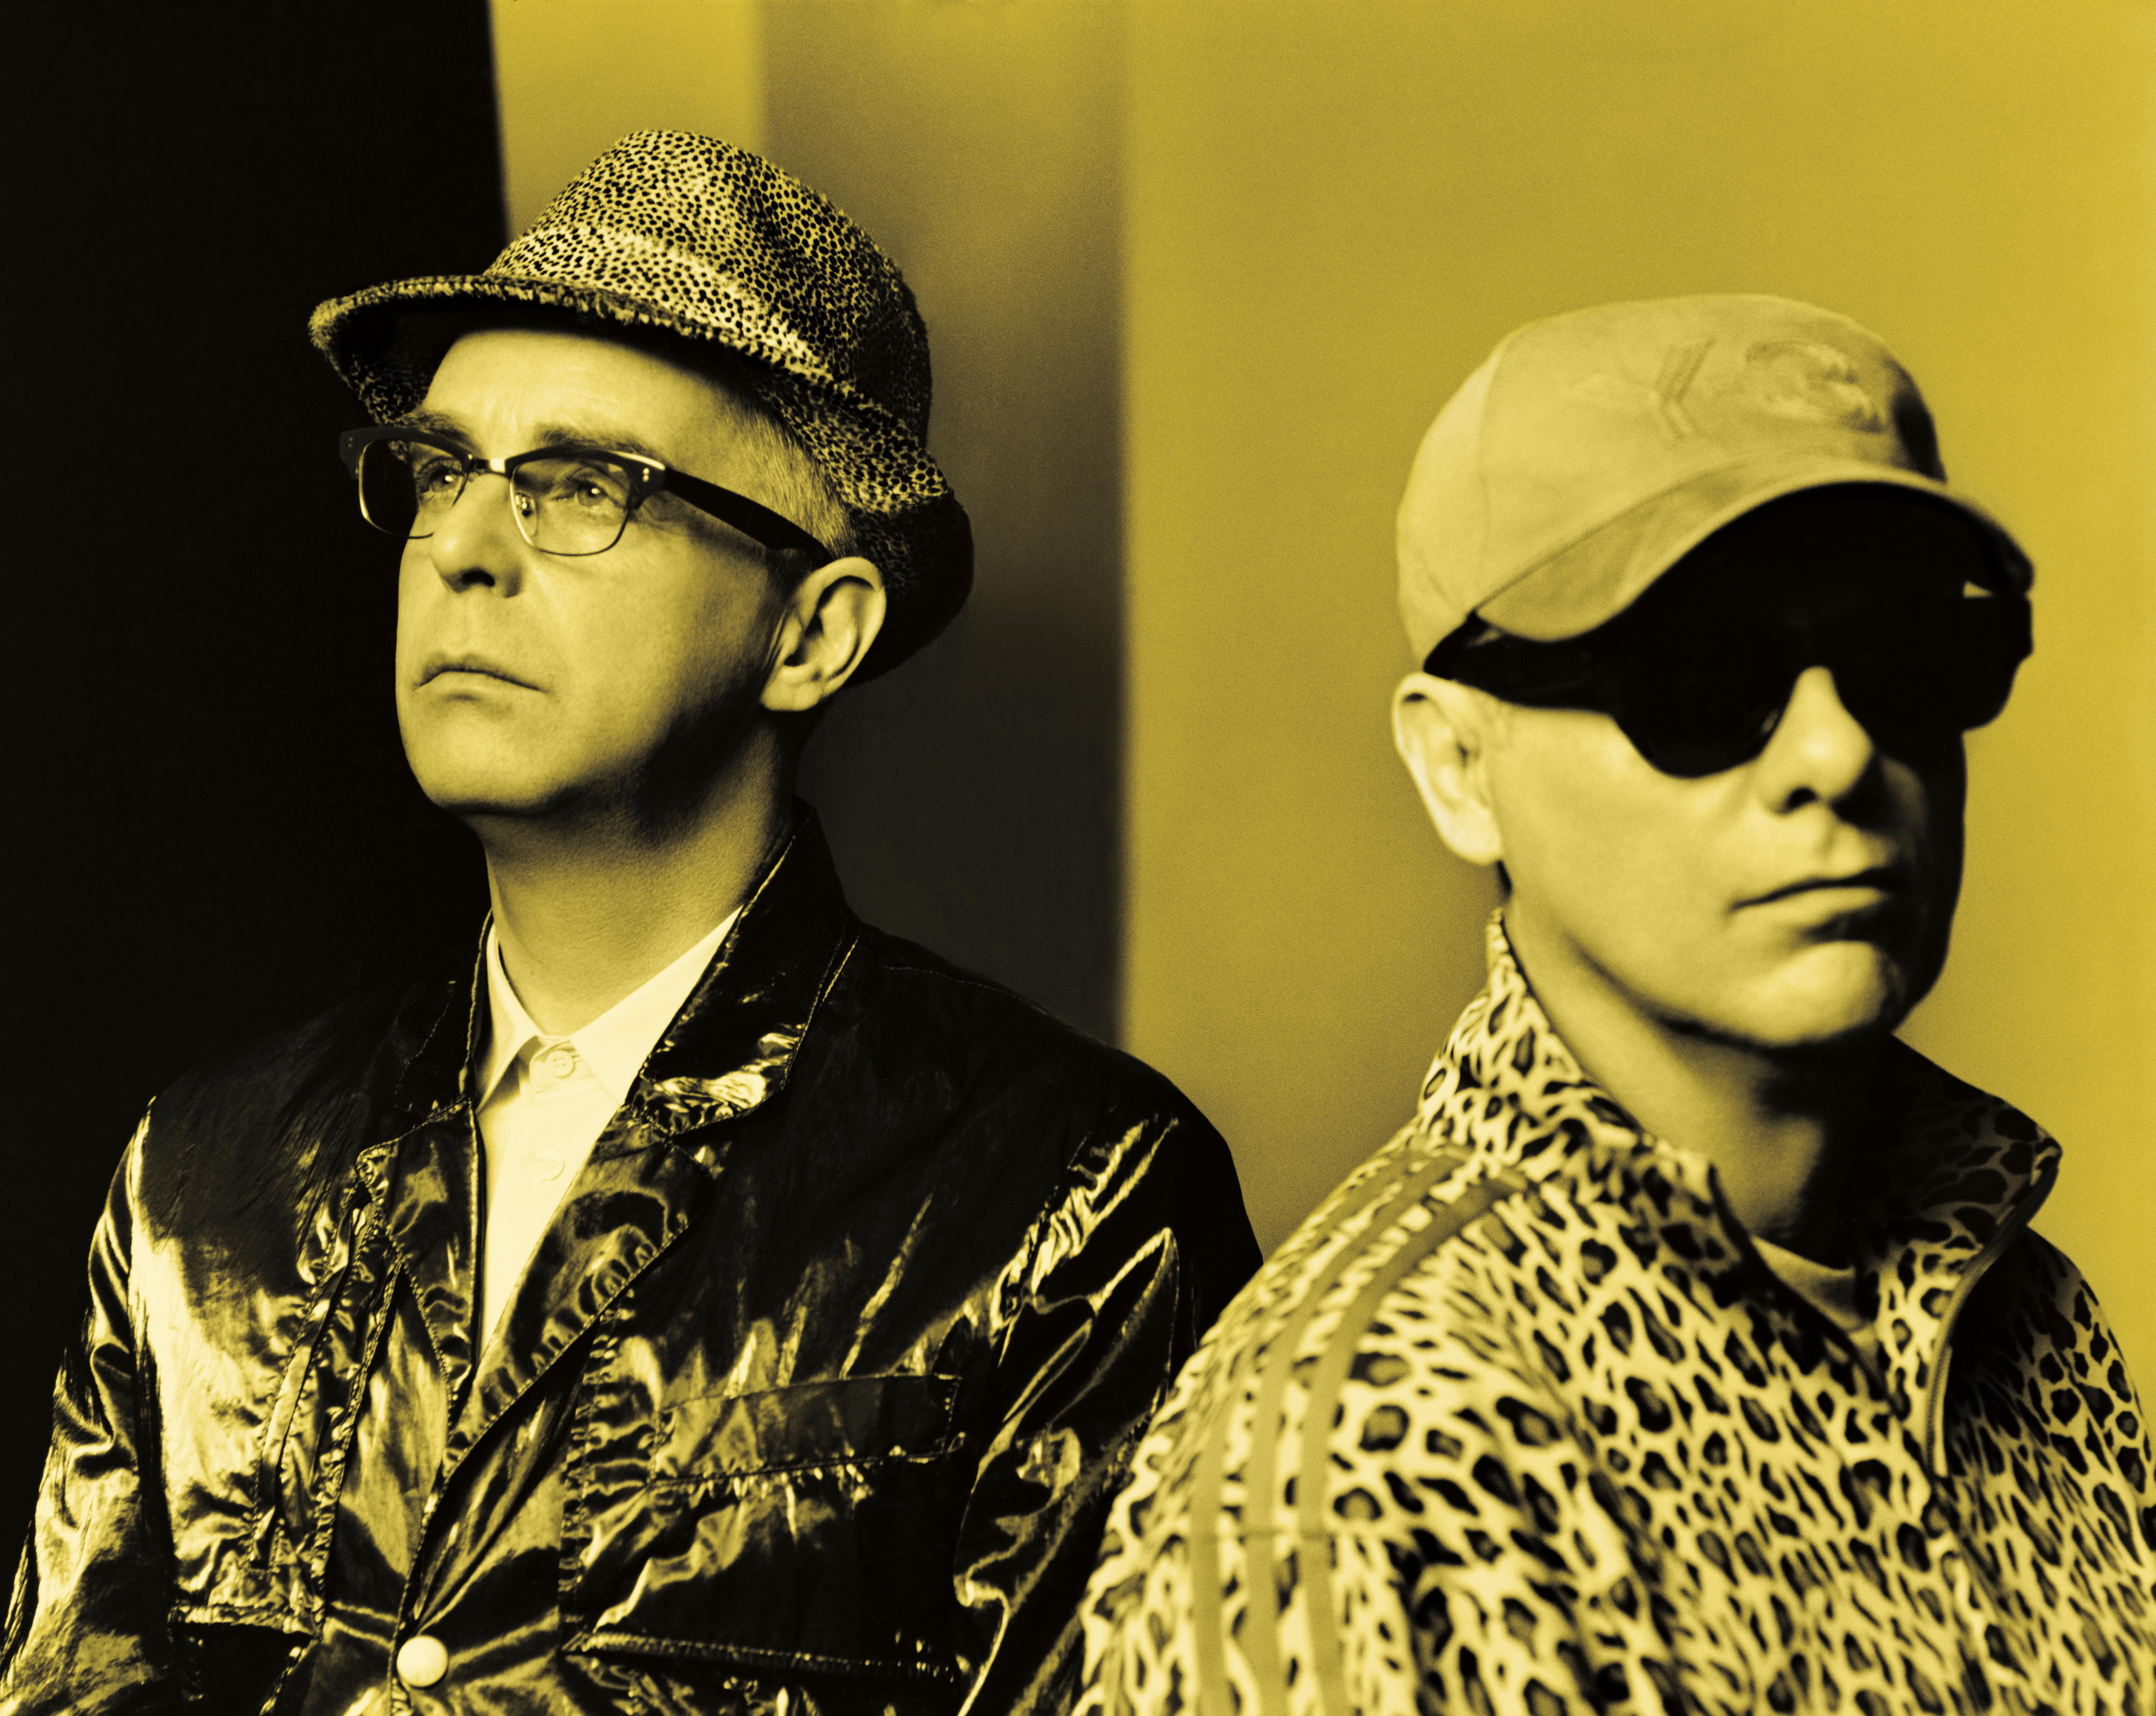 Pet Shop Boys unleash month-long Pandemonium Tour on North America